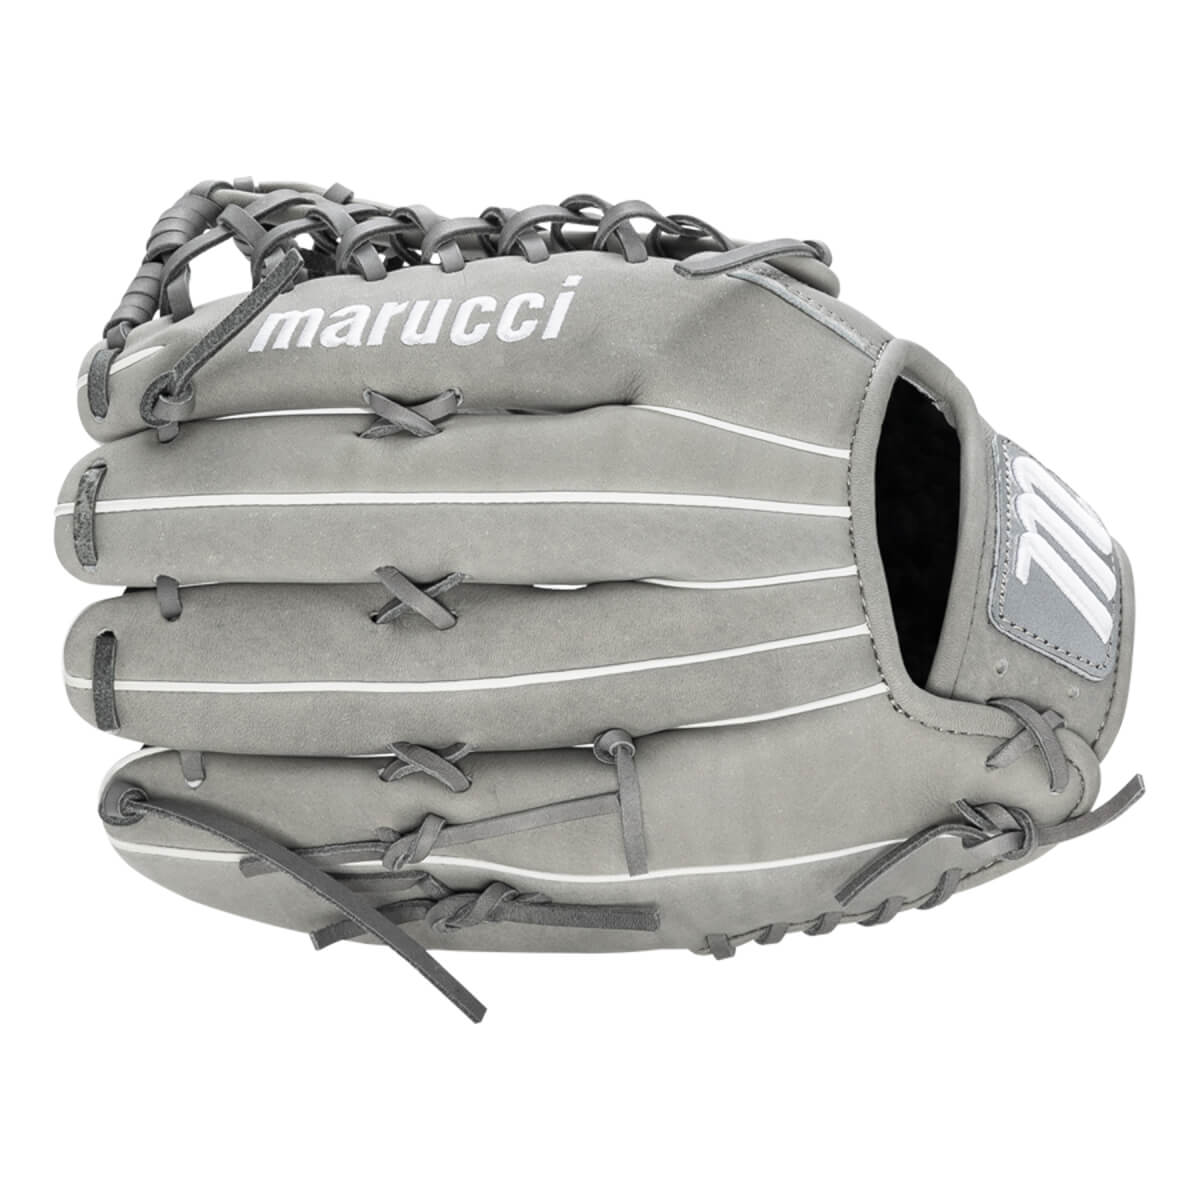 Marucci Cypress 12.75" Outfield Baseball Glove: MFG2CY78R1-GY/SL